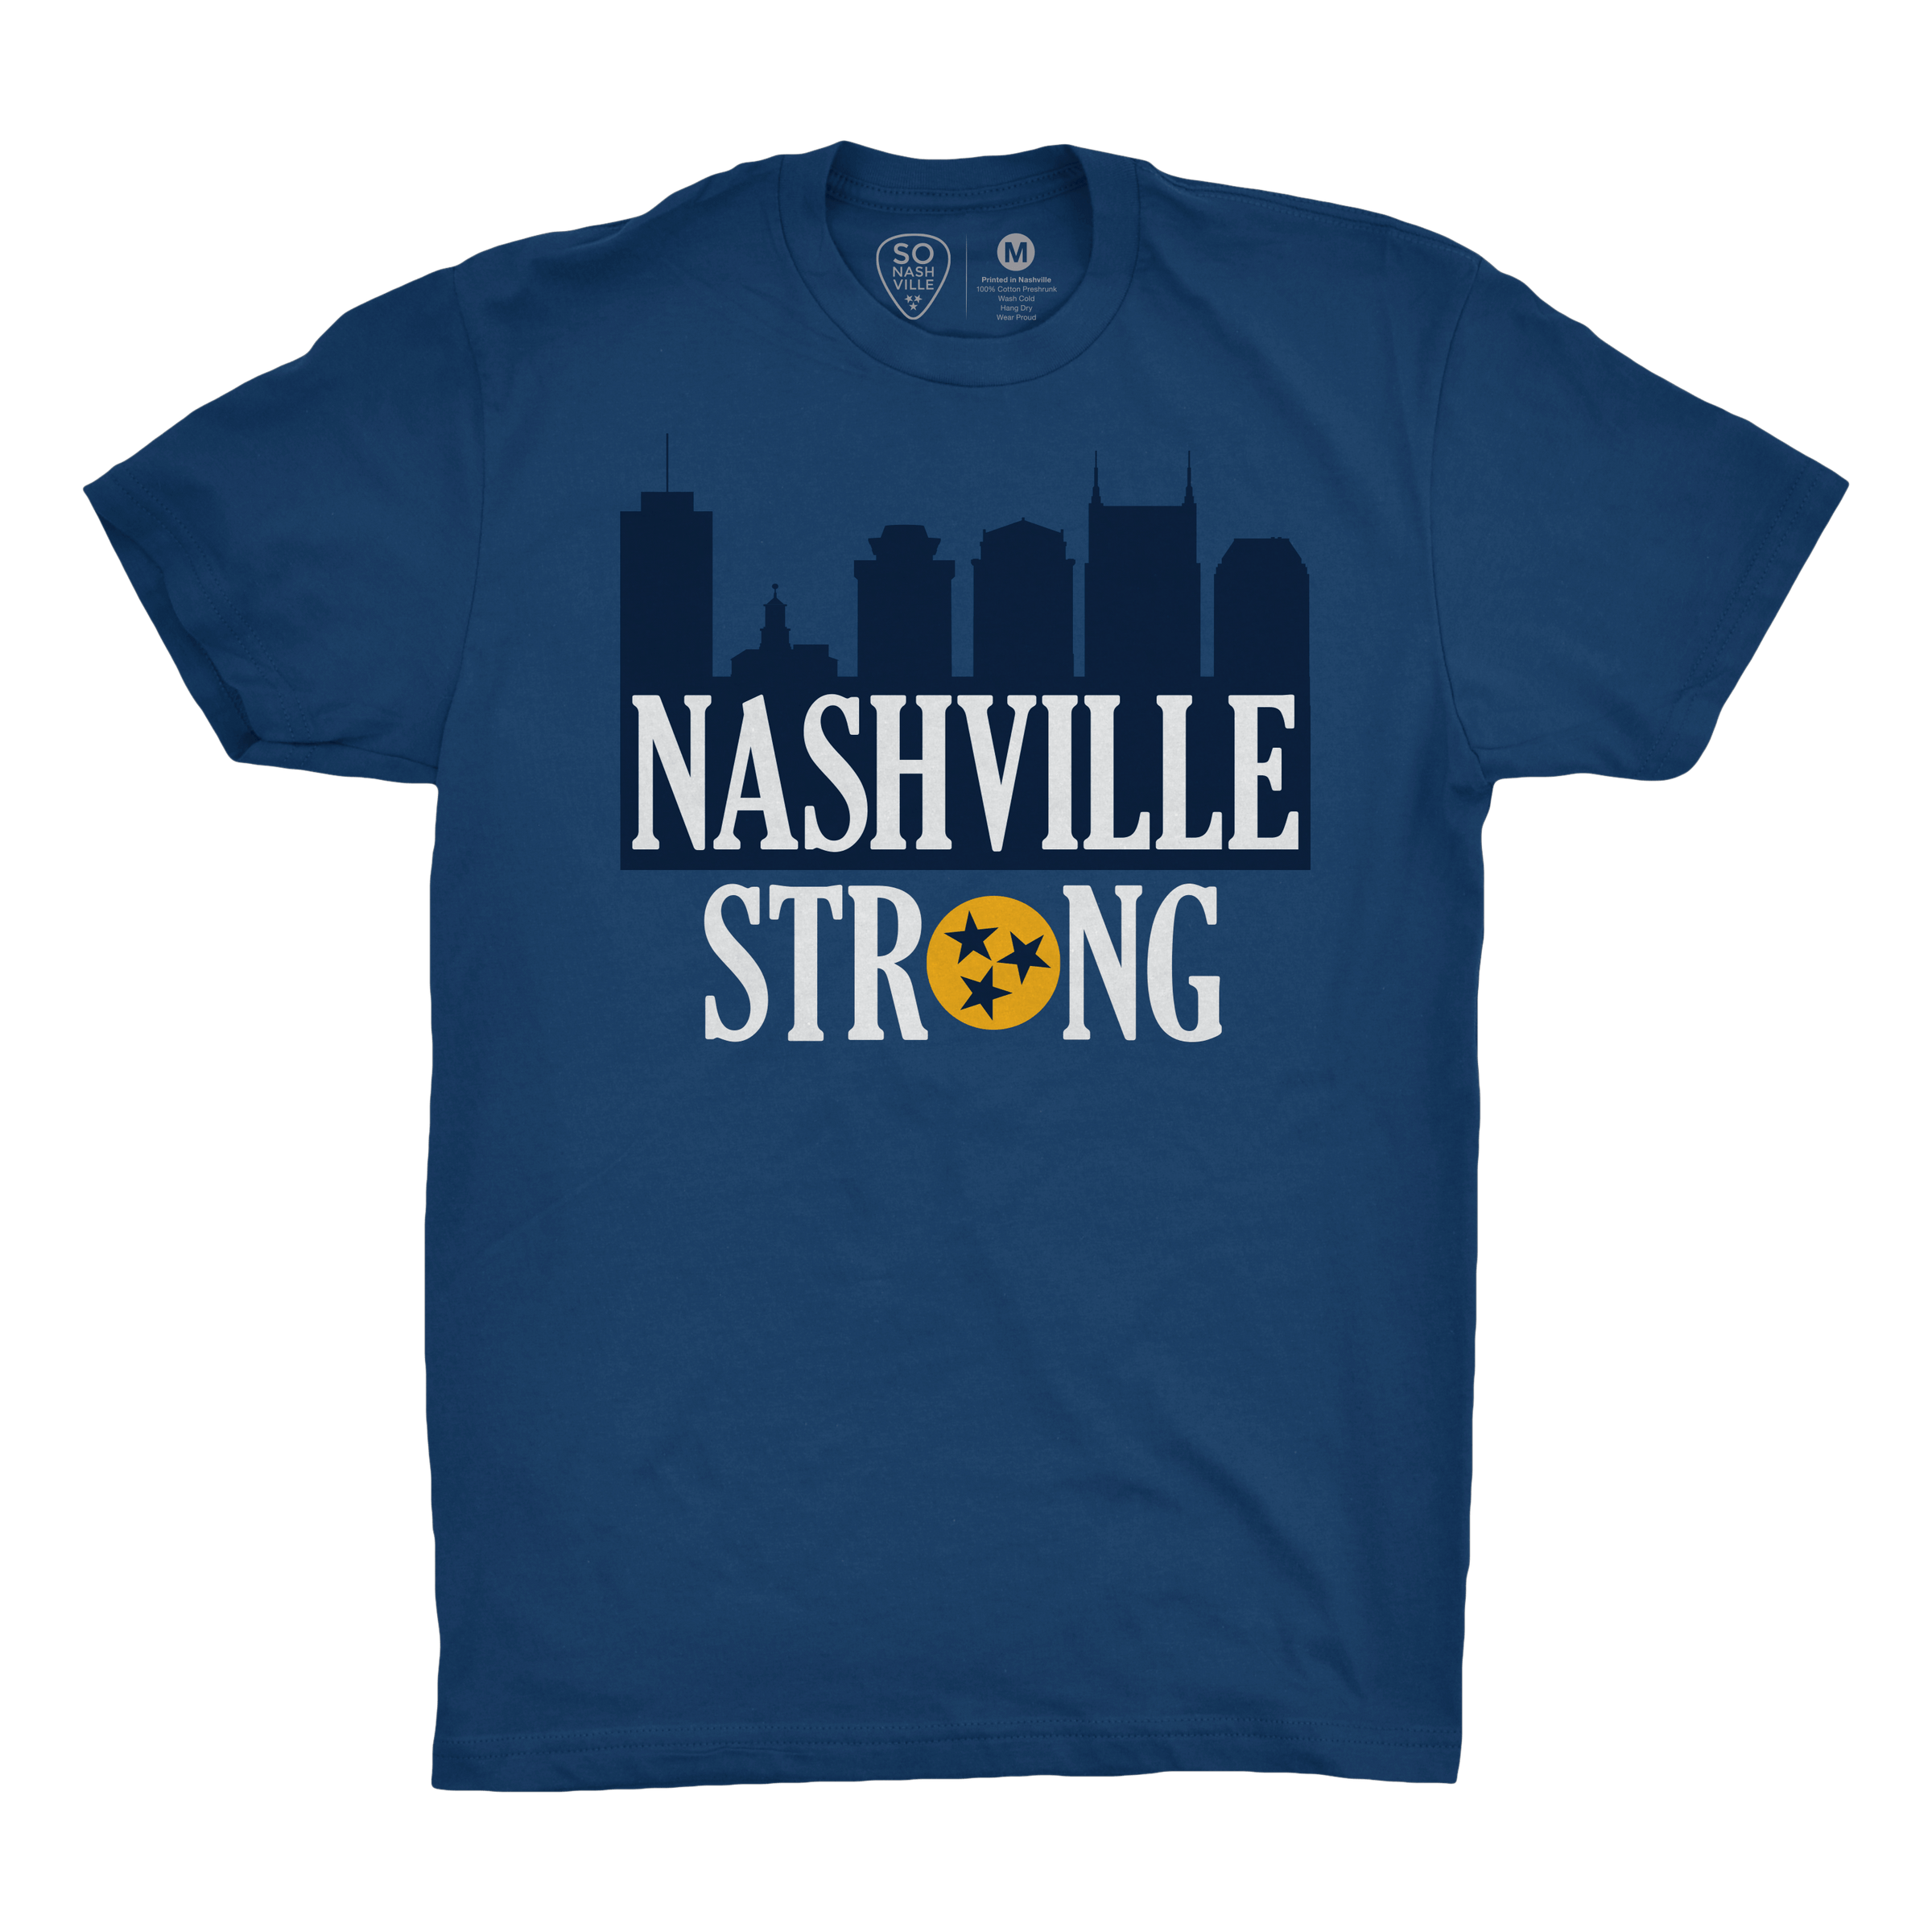 [PREORDER] Nashville Strong - So Nashville Clothing